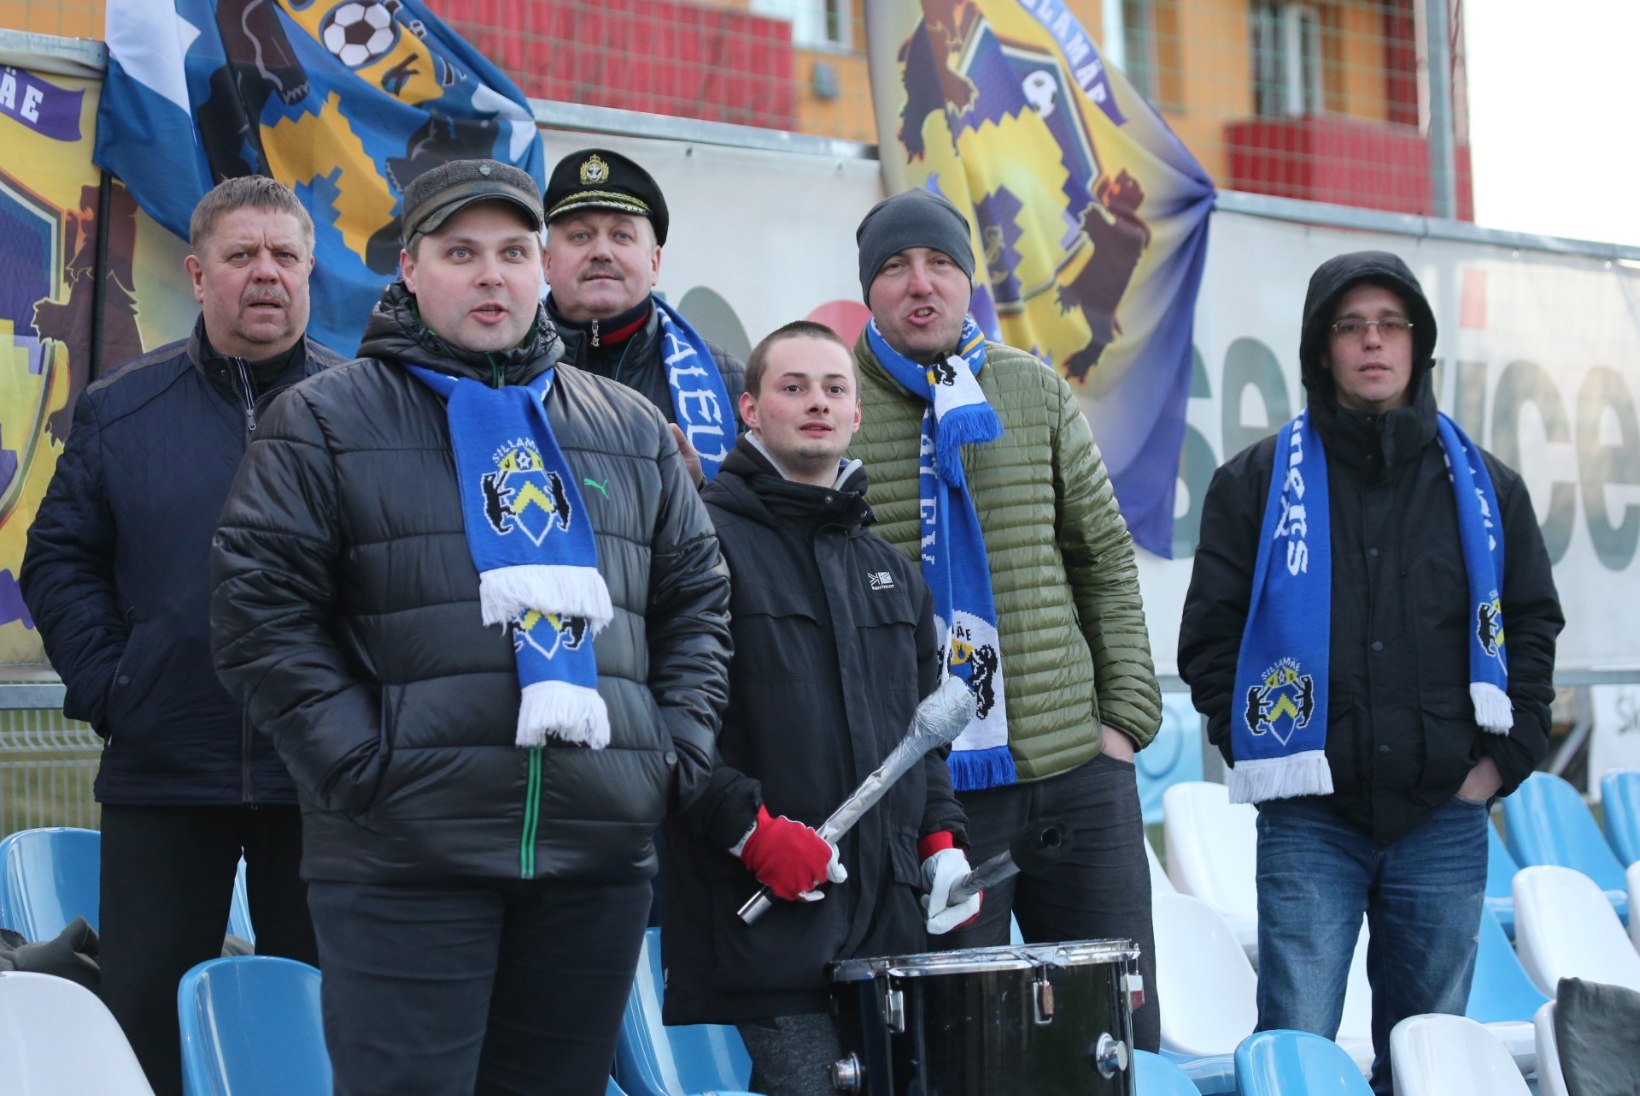 ÕHTULEHE VIDEO | Tammeka vs Sillamäe: vahva laulupidu Sepa staadionil!